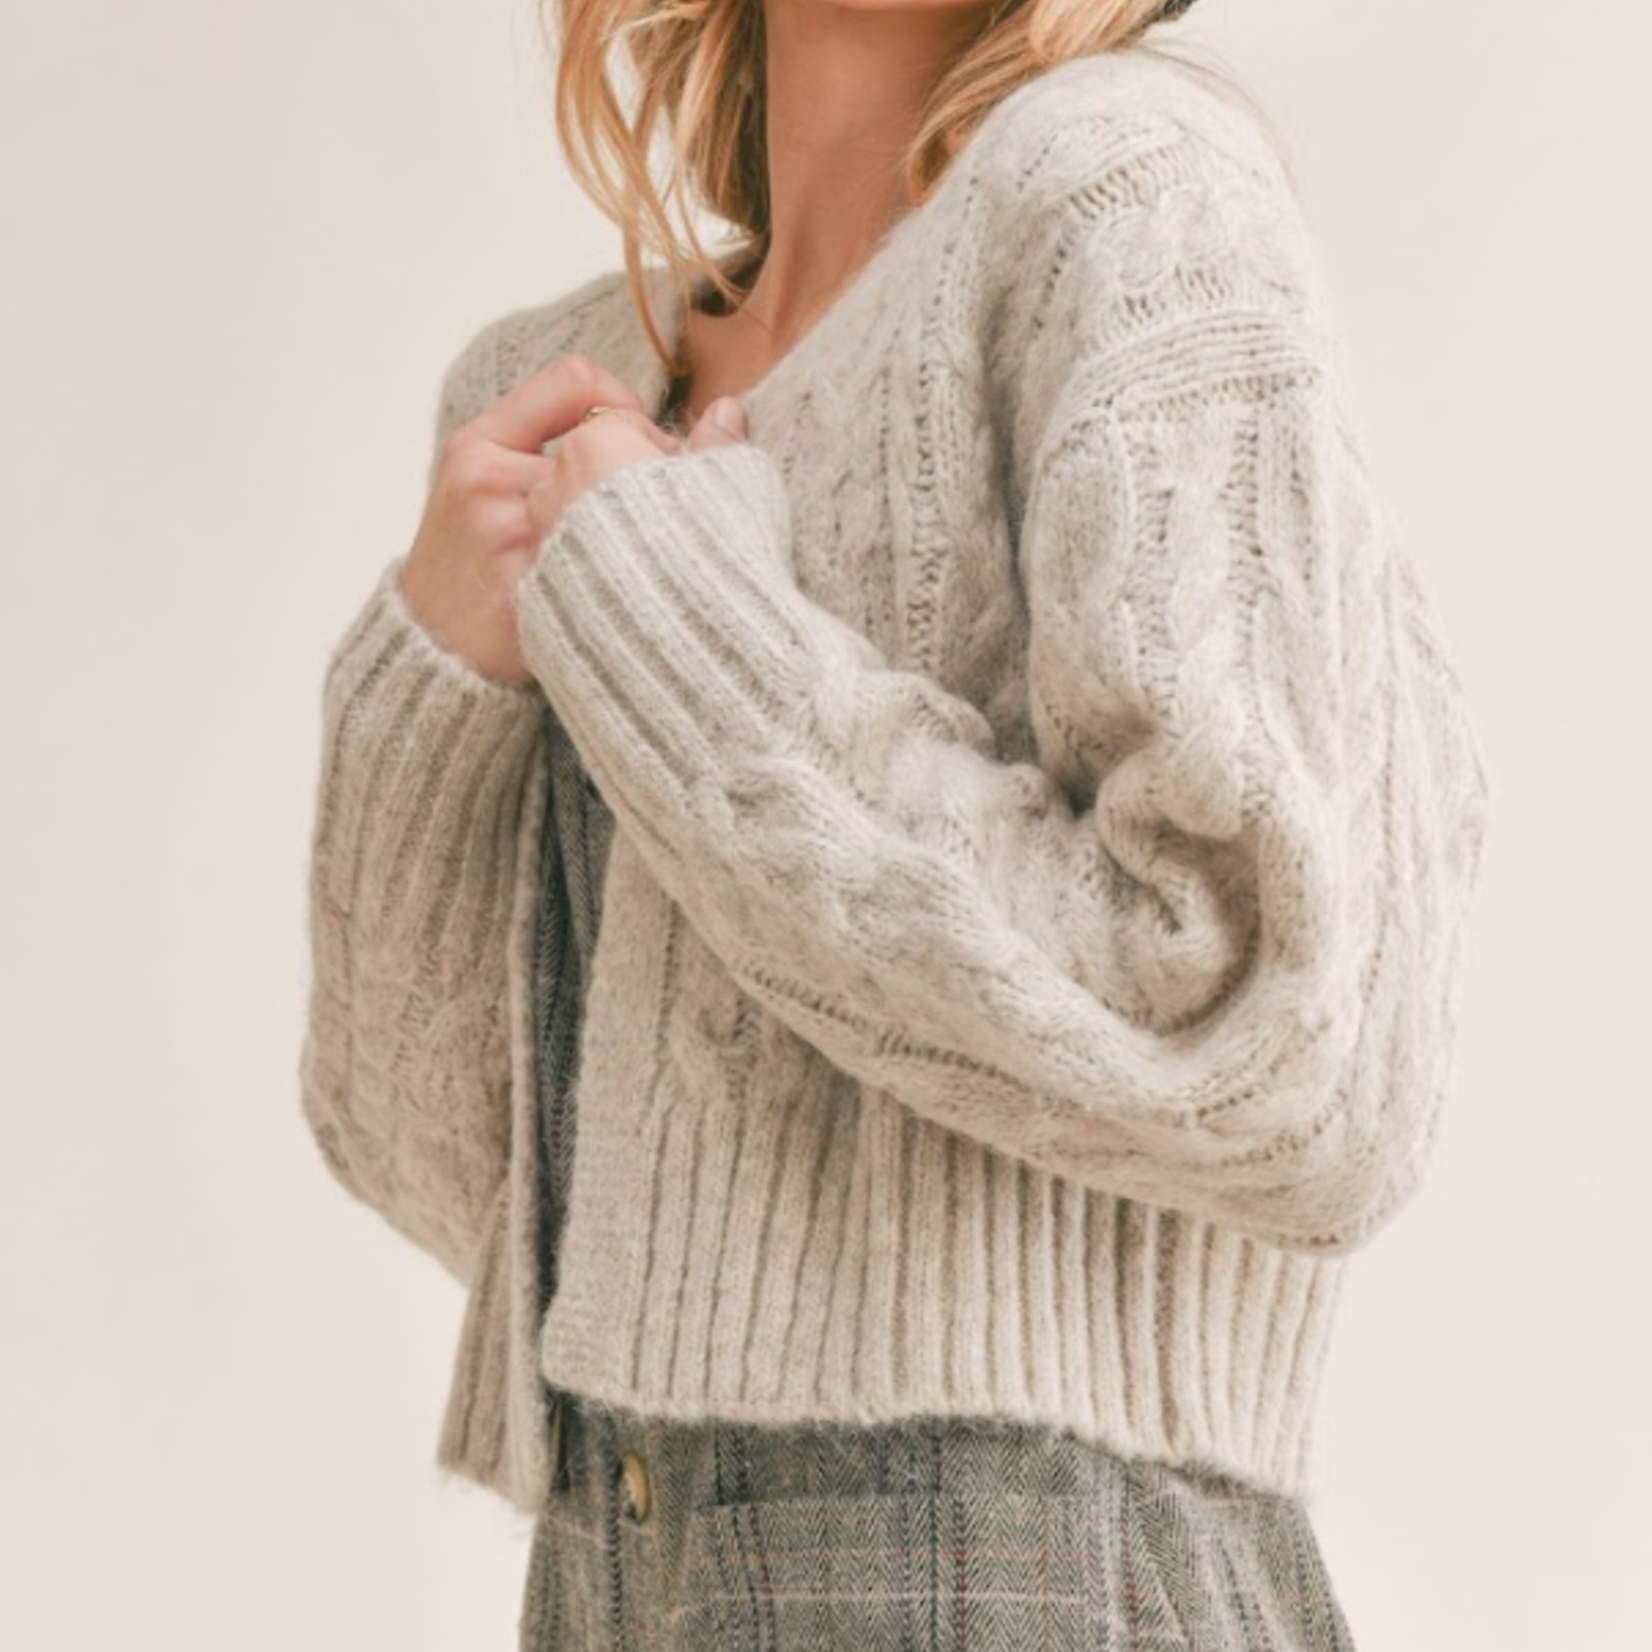 Rhia Cropped Sweater Cardigan